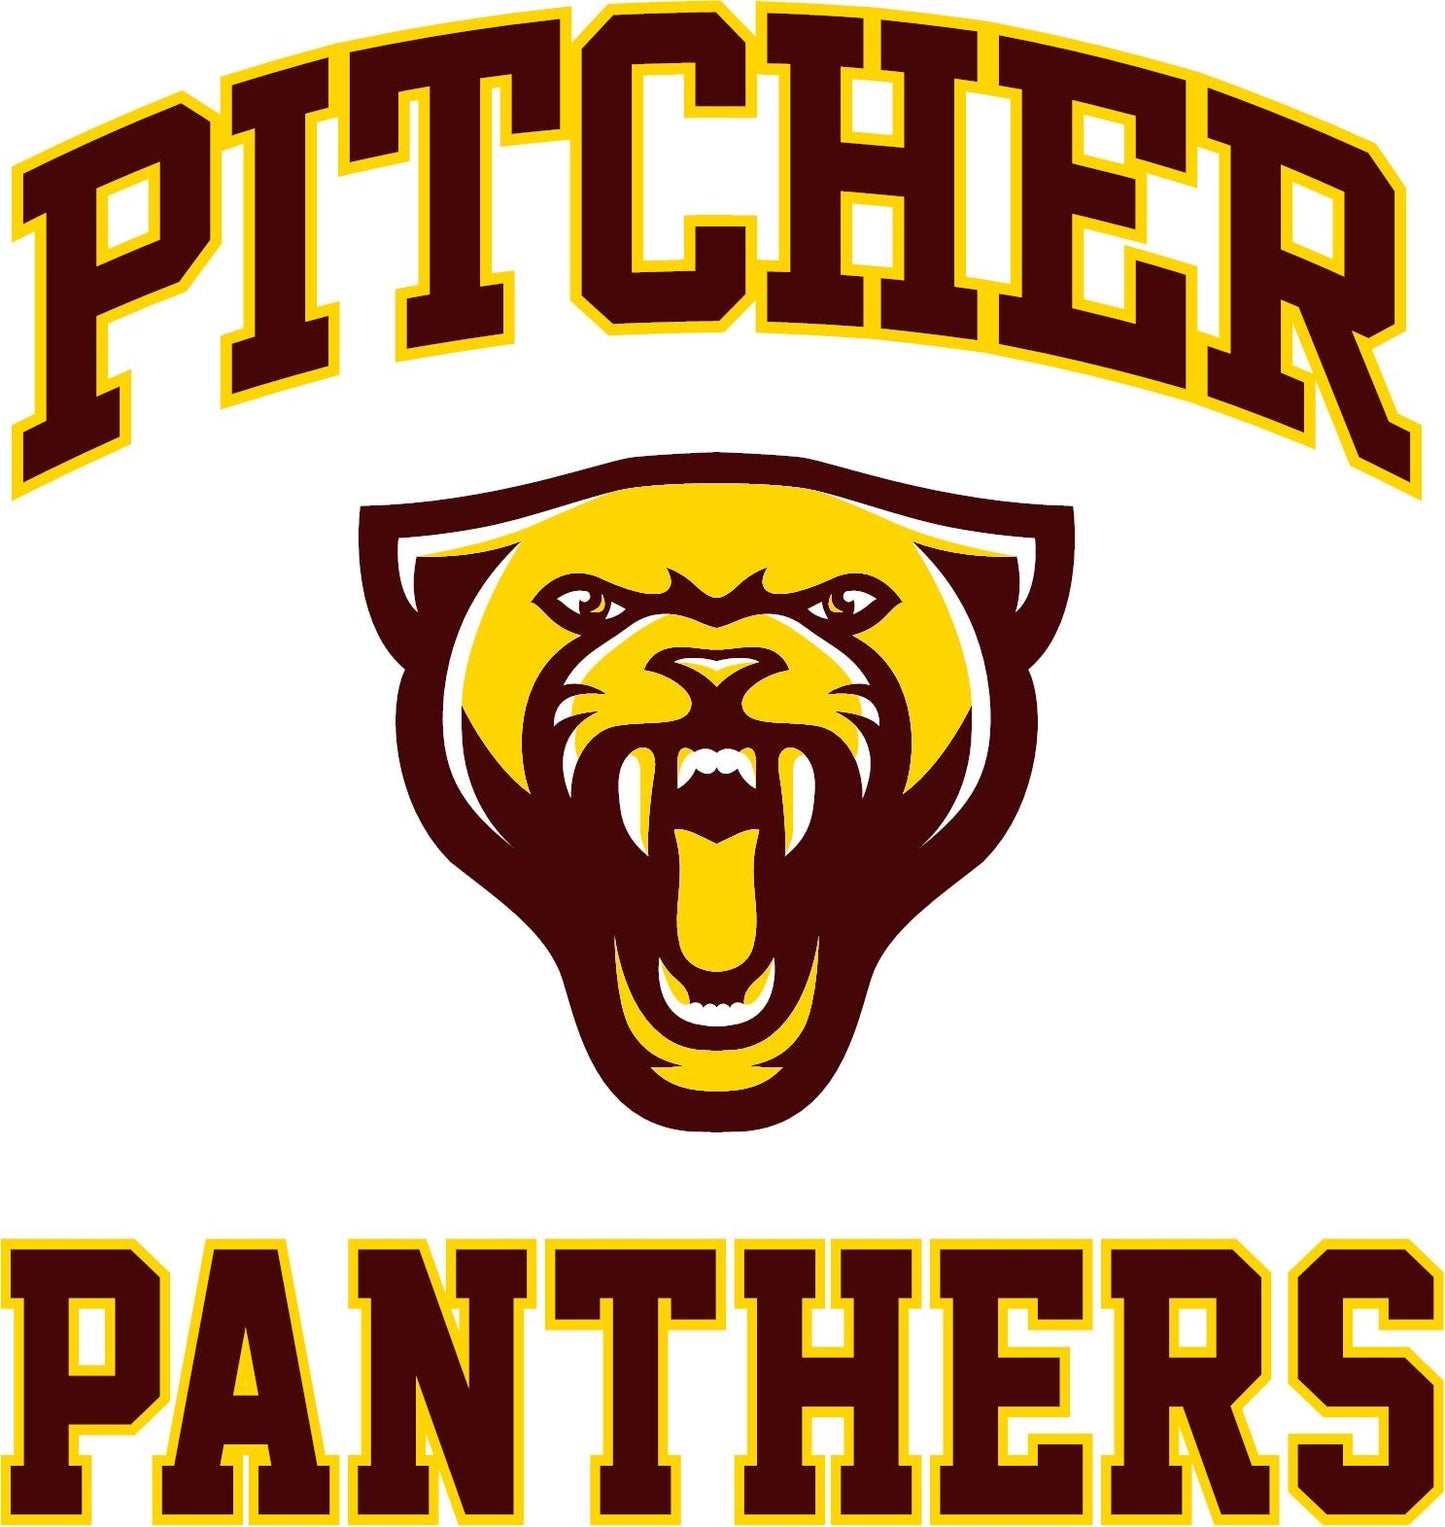 Pitcher Panthers Shirts